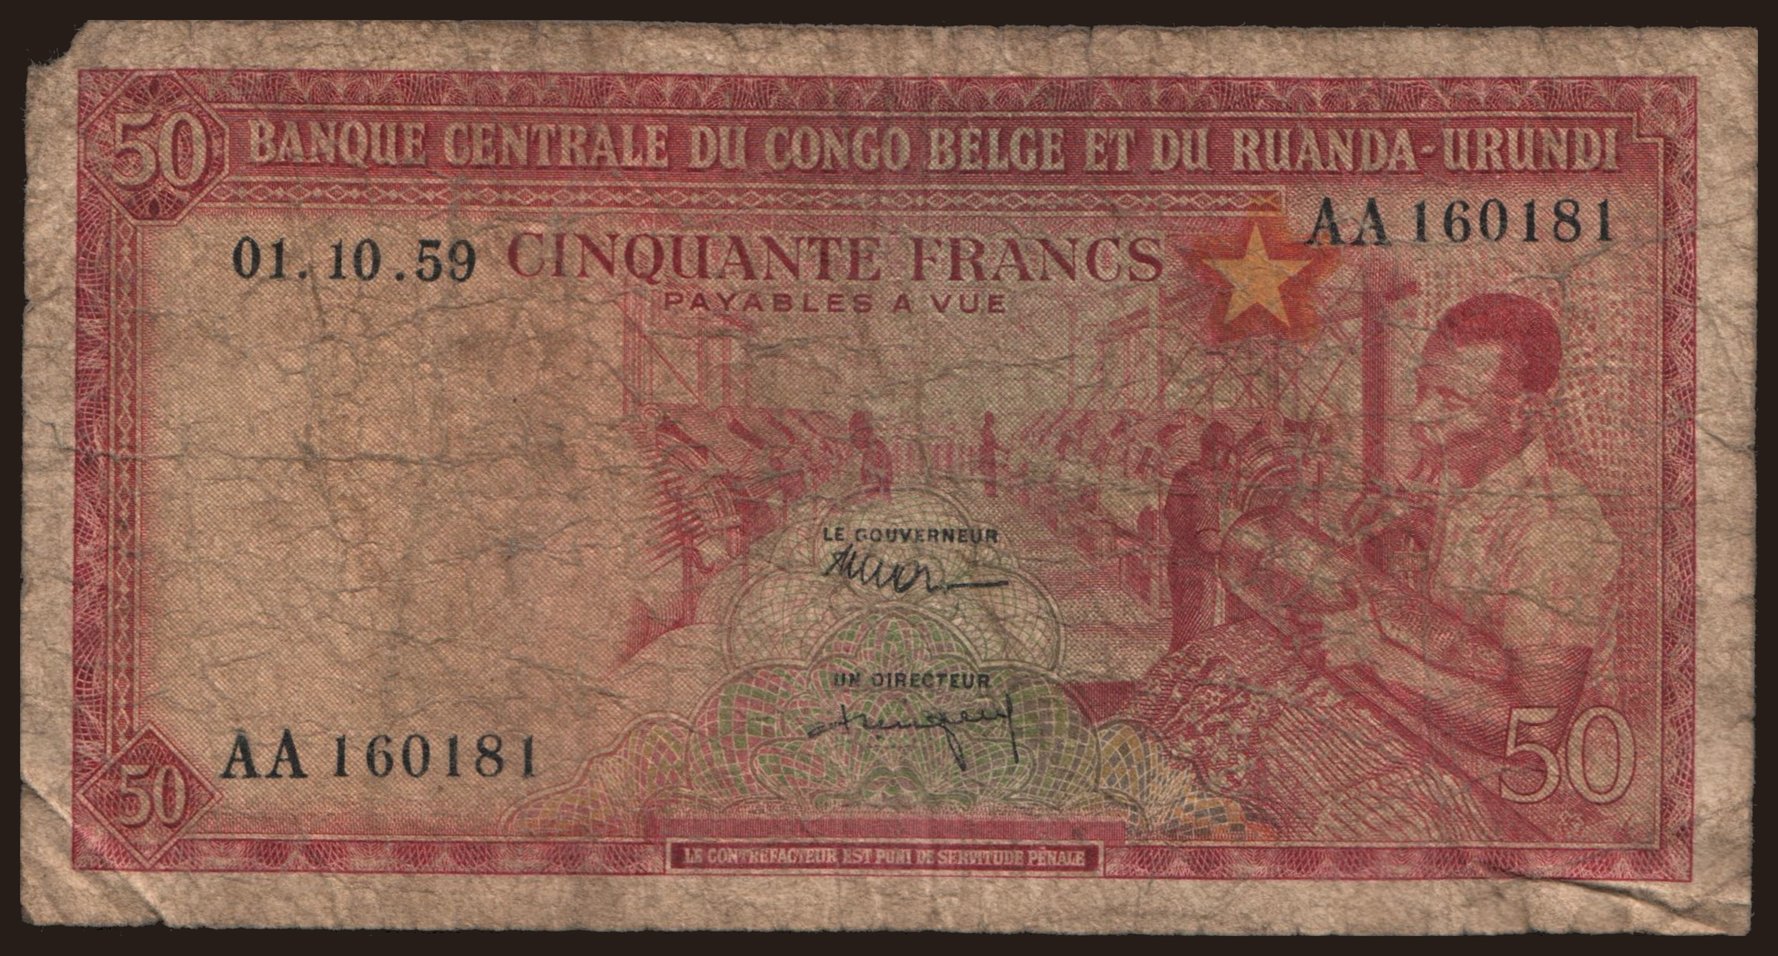 50 francs, 1959